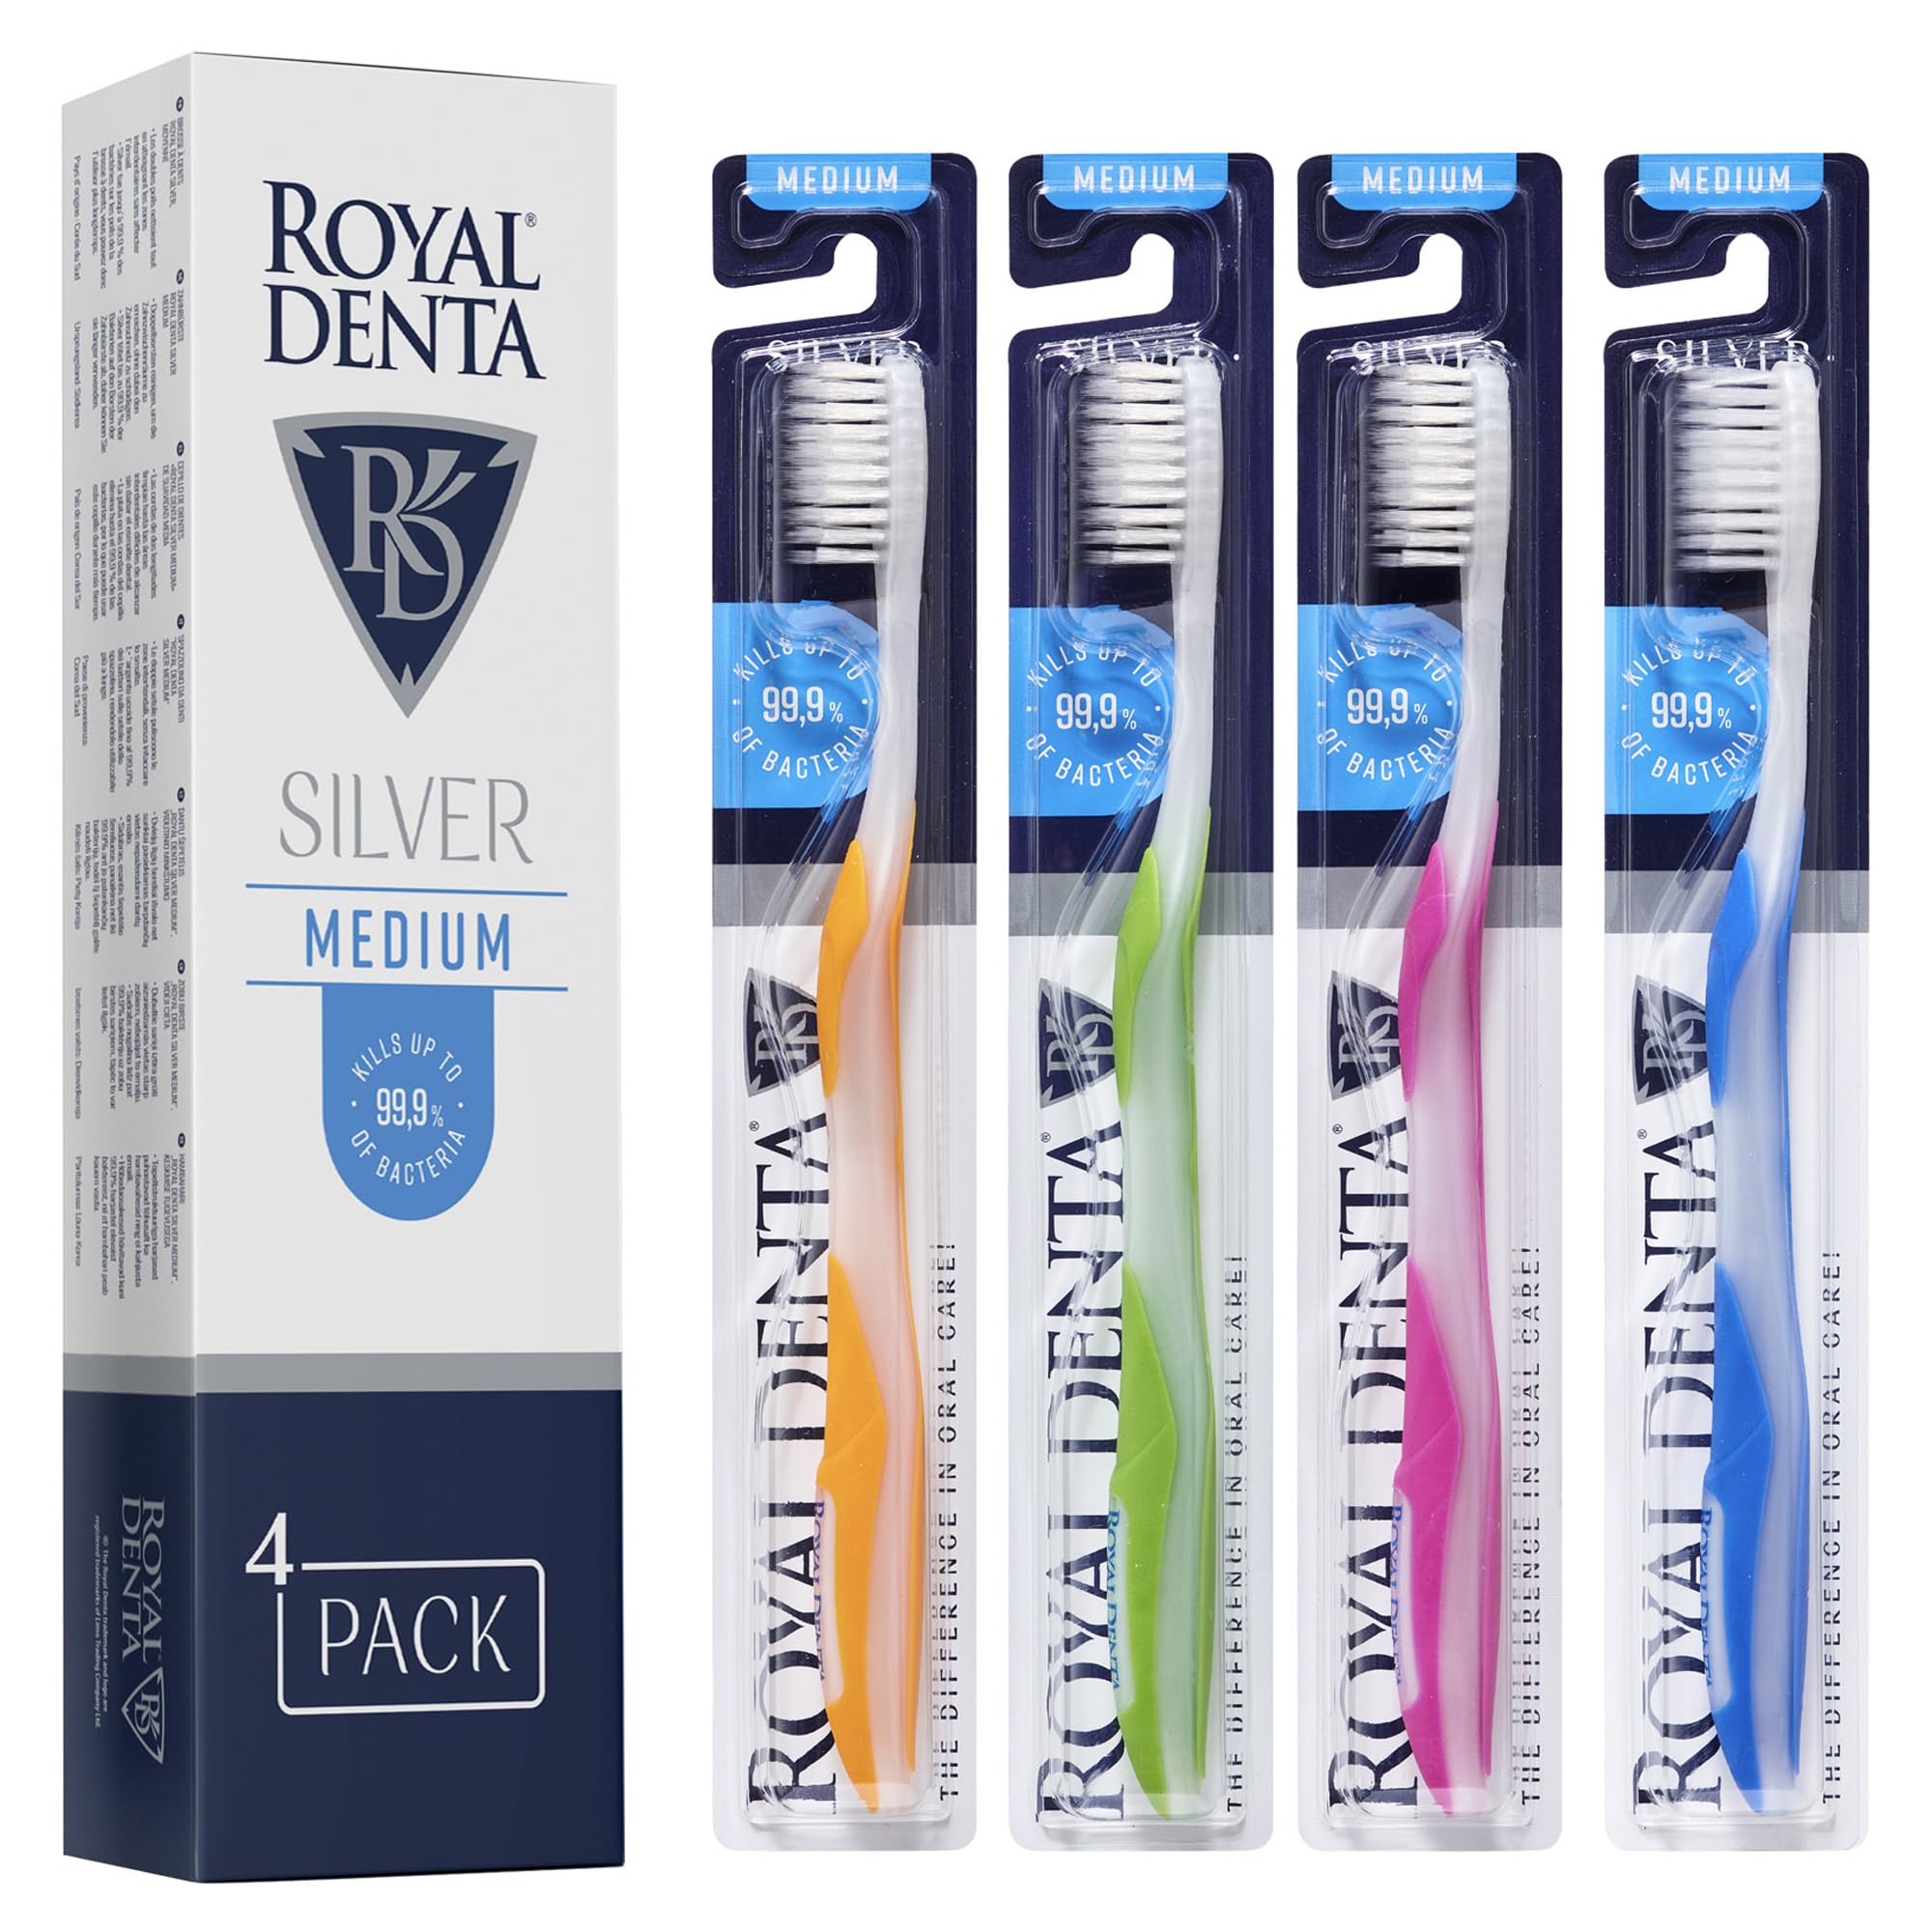 Royal Denta Silver Medium Zahnbürsten 4er-Pack - Doppellänge Borsten für Interdentalreinigung, Silberpartikel gegen Bakterien, Zahnsteinentfernung, Mittlere Stärke, Mehrfarbig